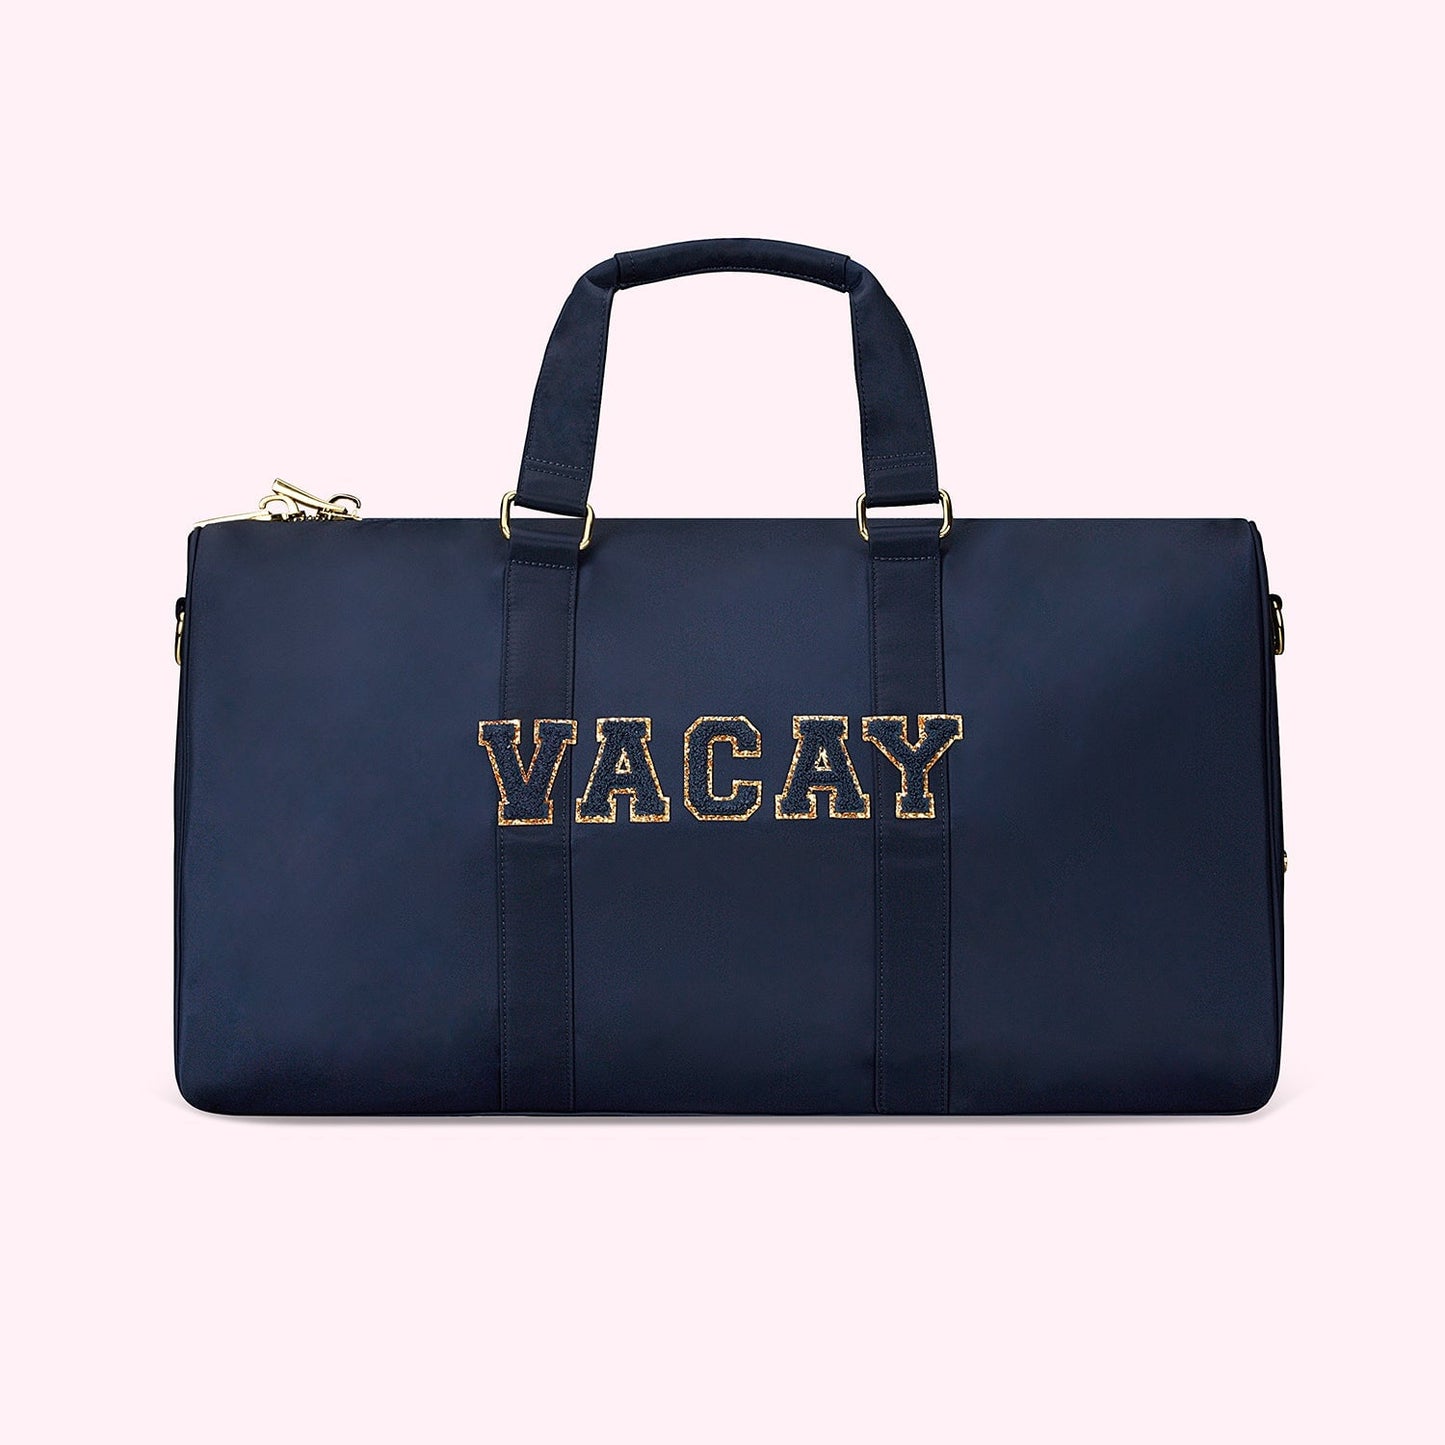 Vacay Classic Duffle Bag